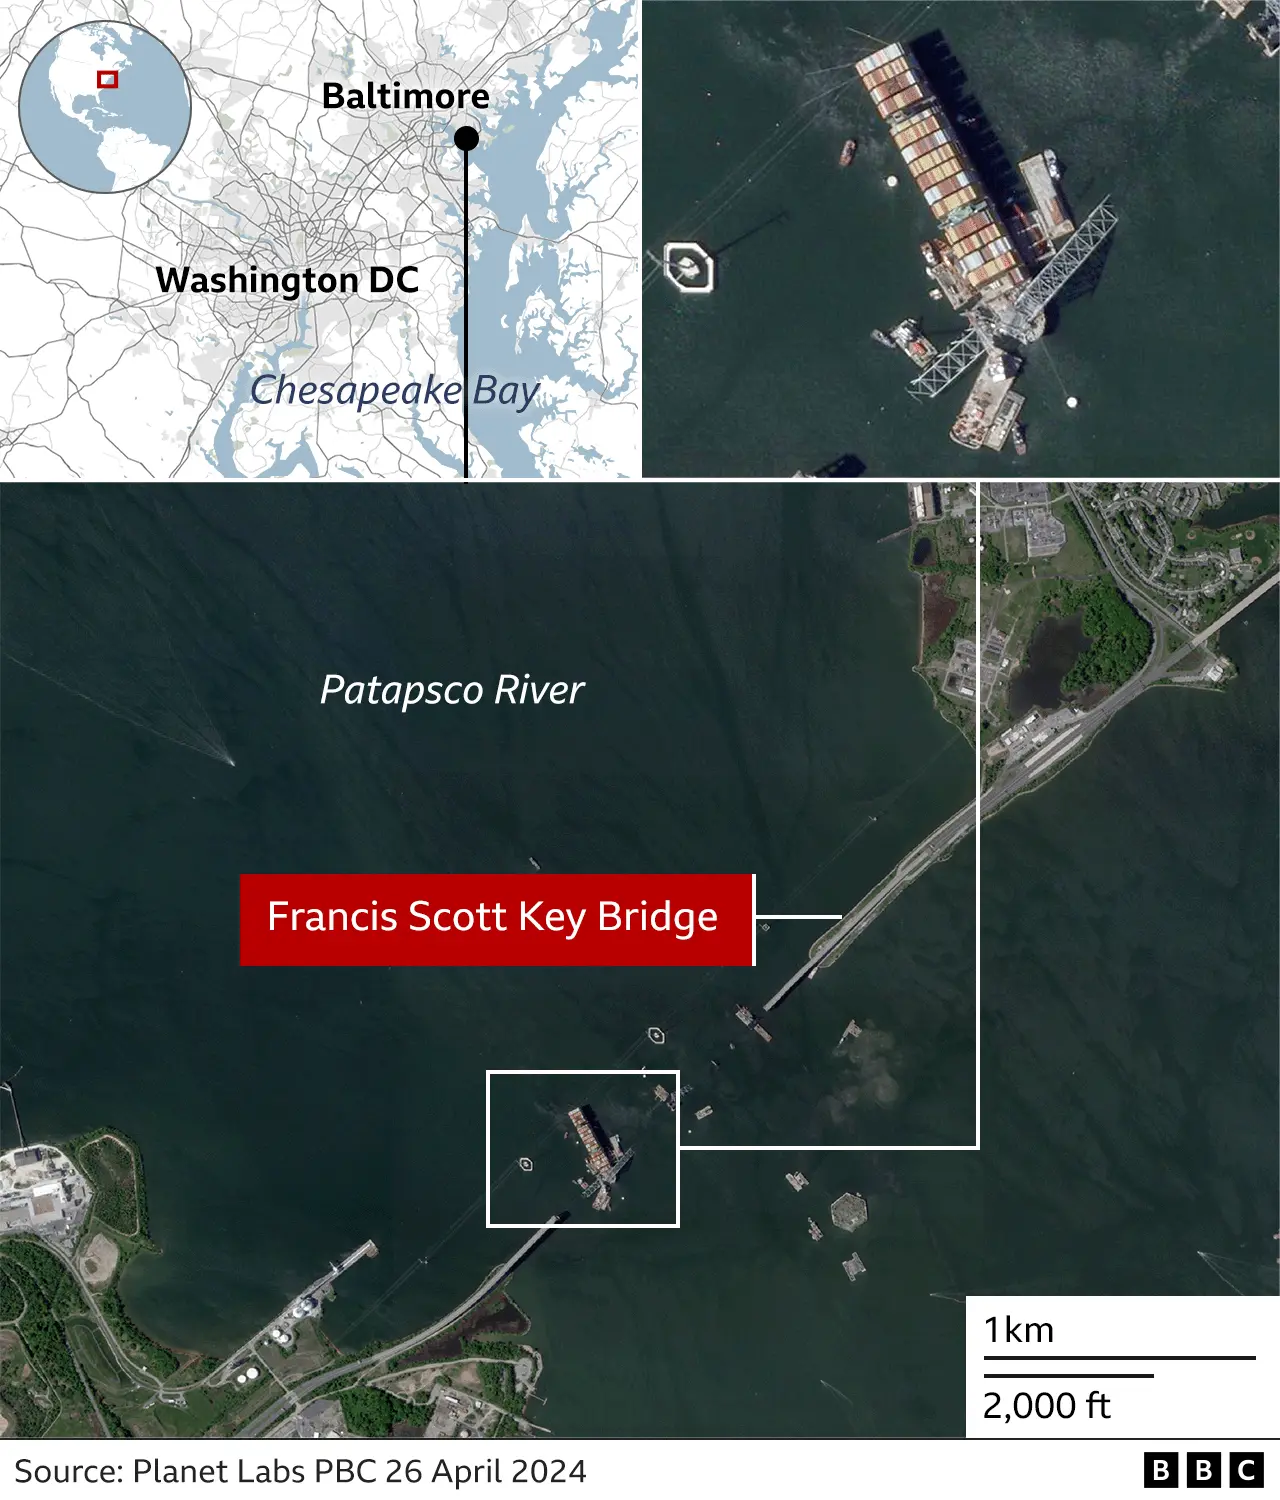 Map of Baltimore showing bridge